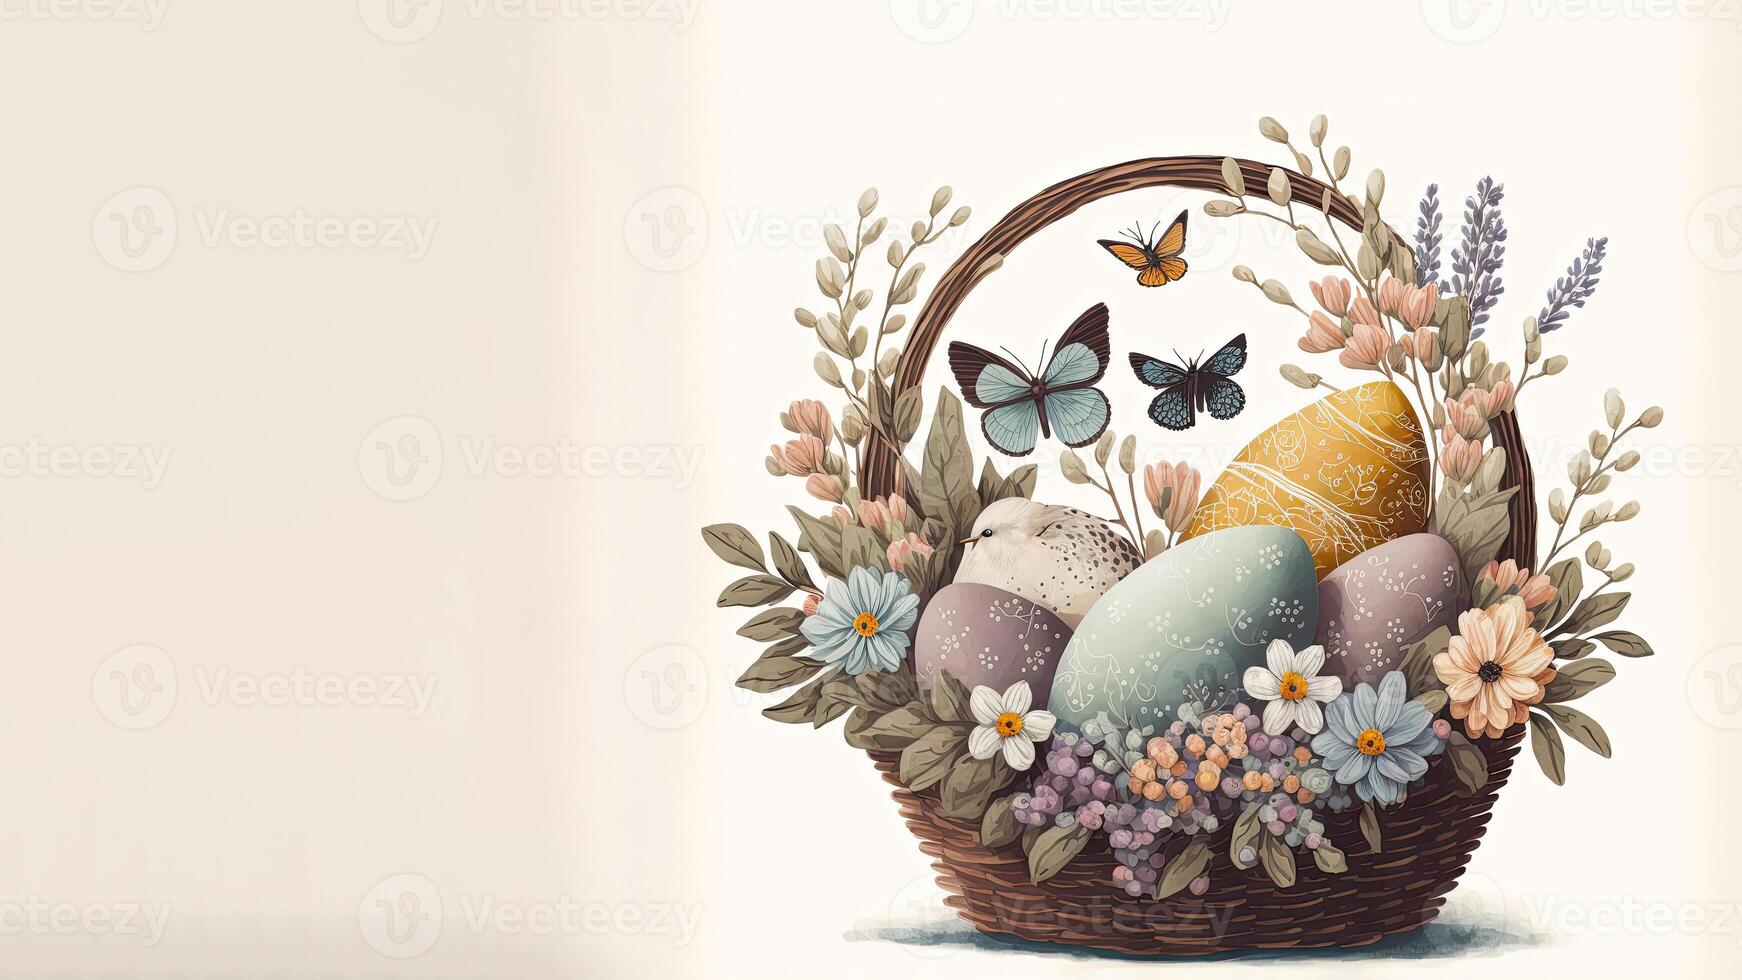 illustratie van vlinder met vogel tekens met ei binnen bloemen mand tegen kosmisch latte achtergrond en kopiëren ruimte. gelukkig Pasen dag concept. foto